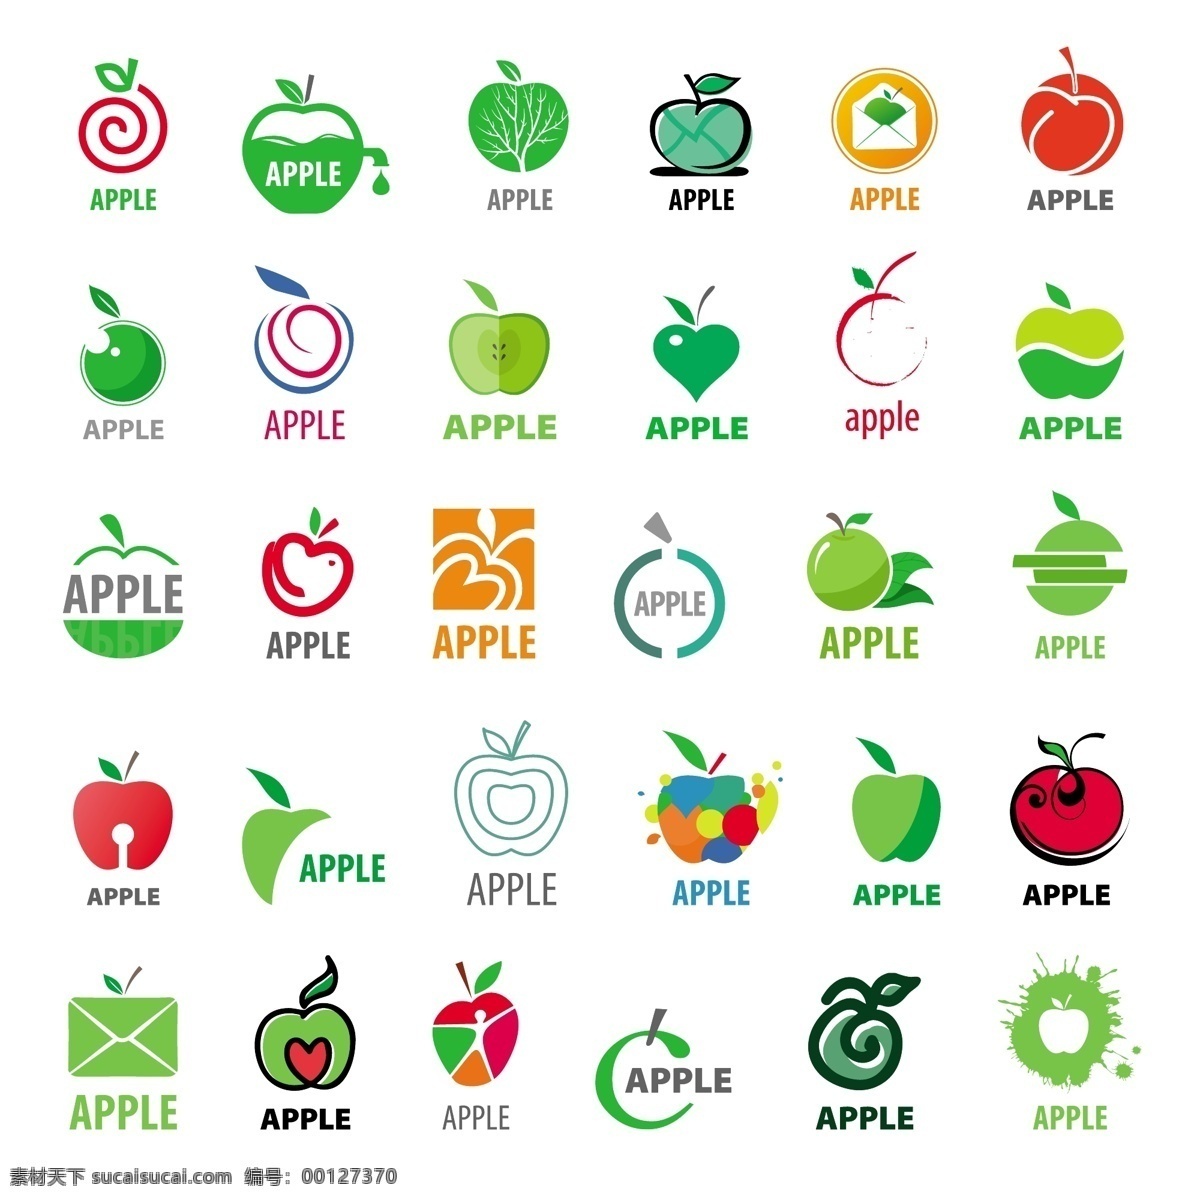 各种 苹果 矢量图 苹果矢量图 苹果图标 苹果icon 苹果设计图 标志图标 网页小图标